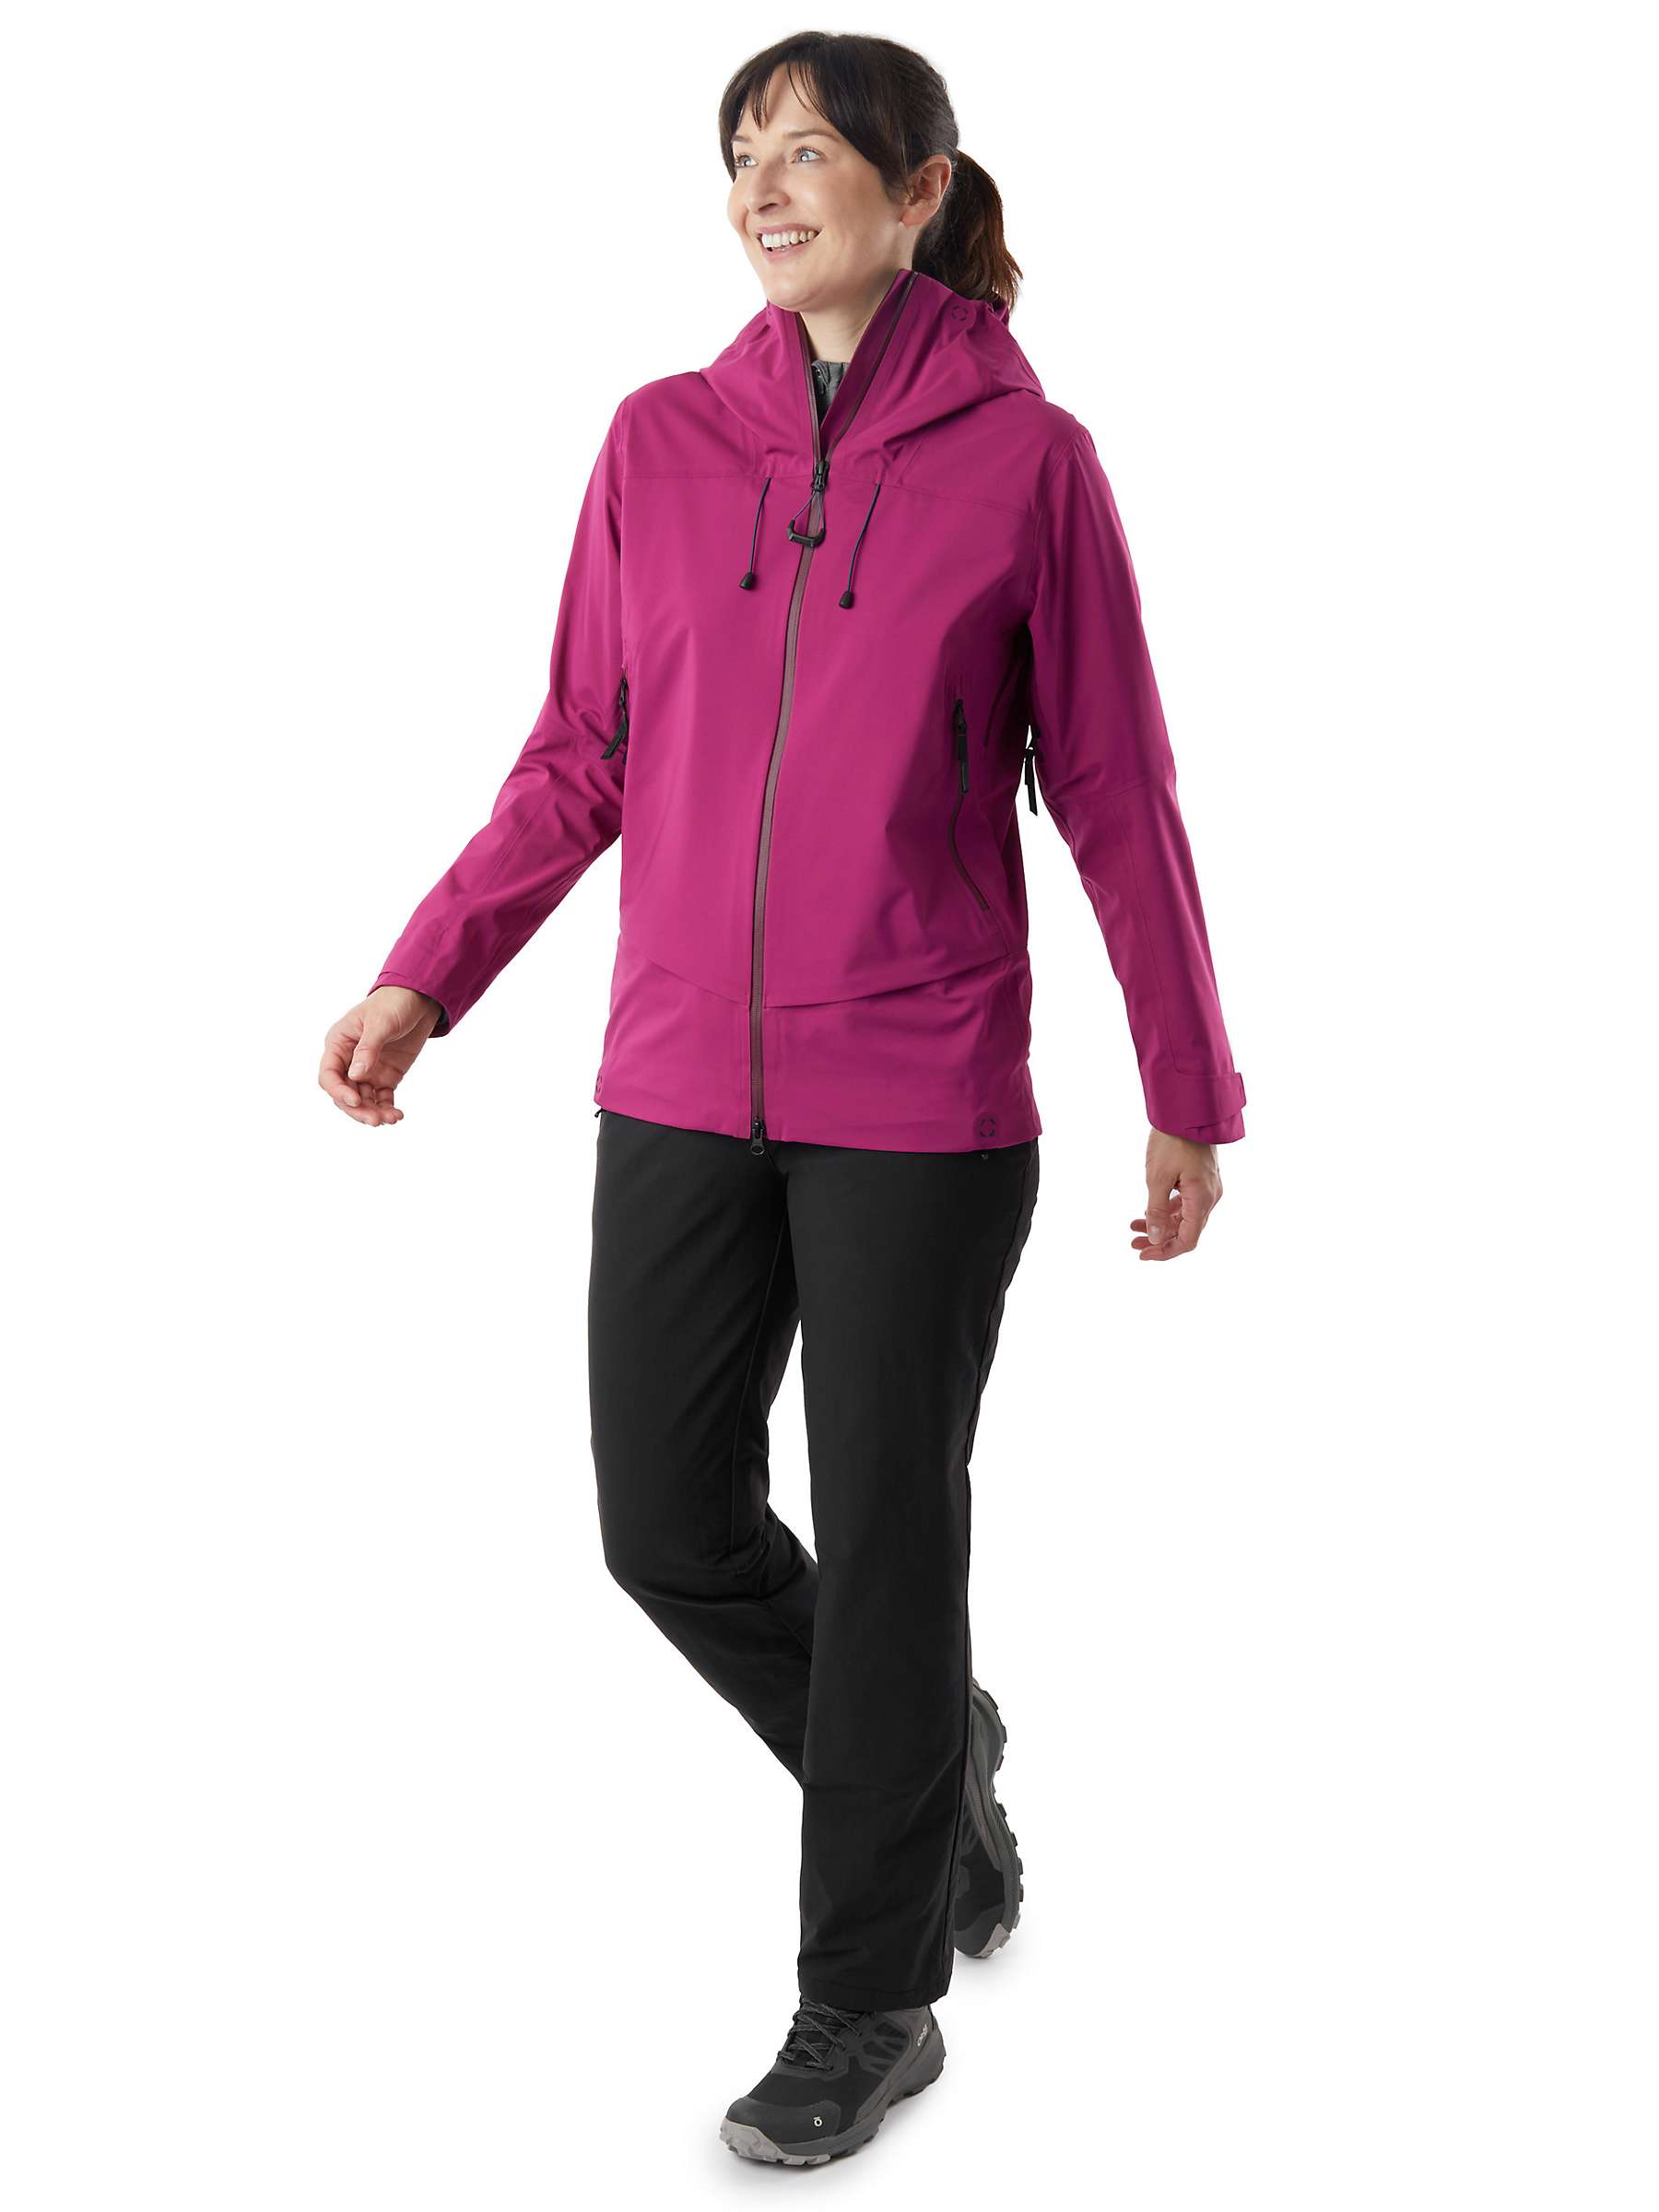 Buy Rohan Ventus Waterproof Jacket, Raspberry Pink Online at johnlewis.com